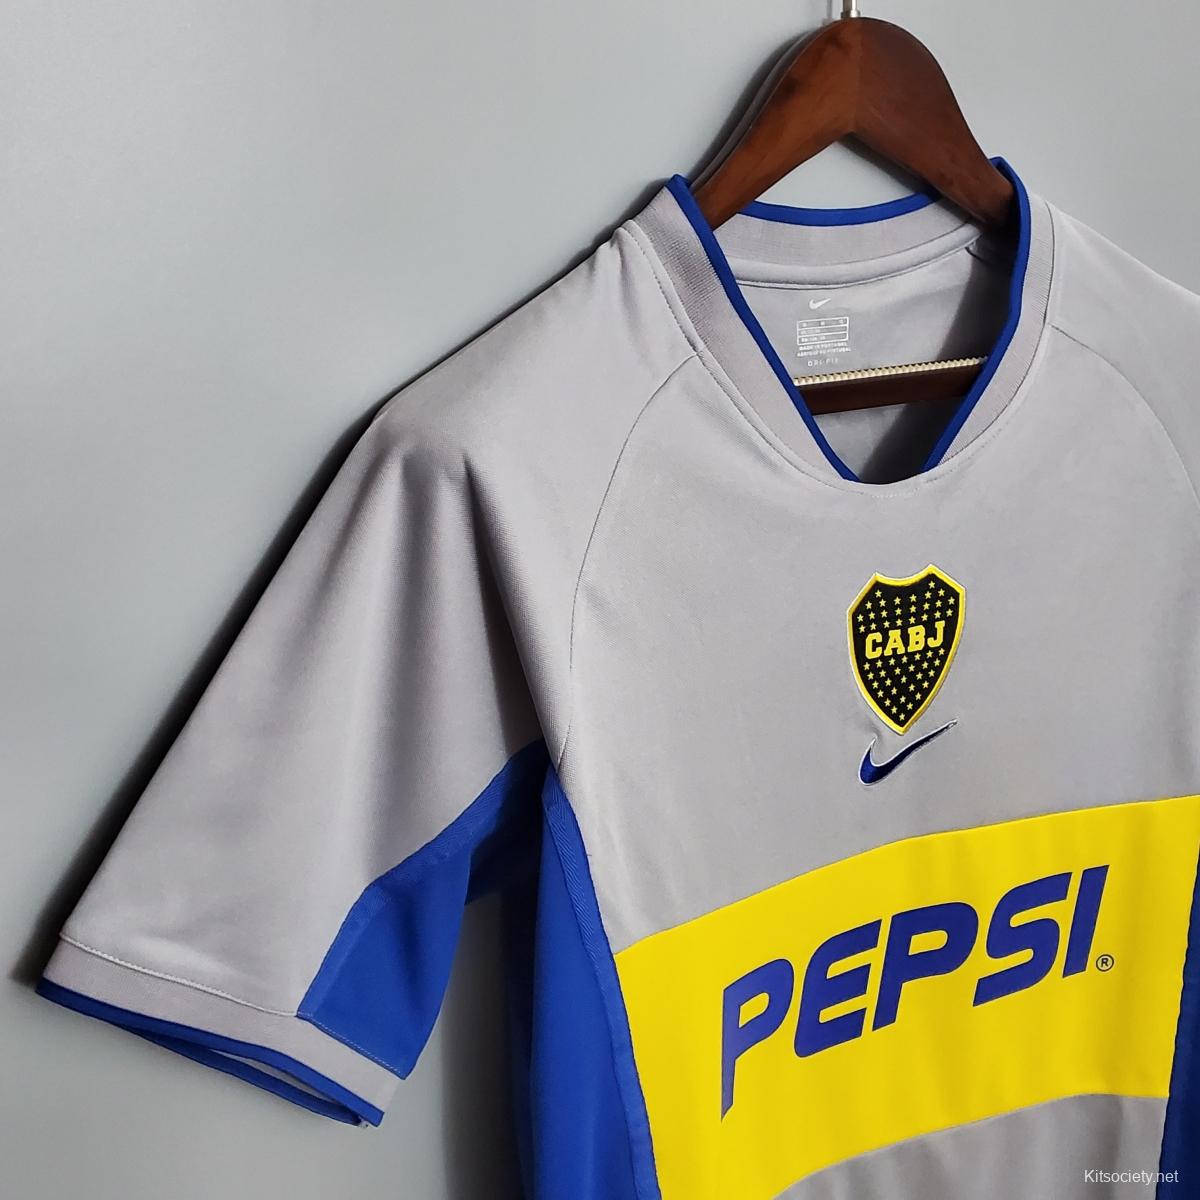 Retro Boca Juniors 99/00 home Soccer Jersey - Kitsociety